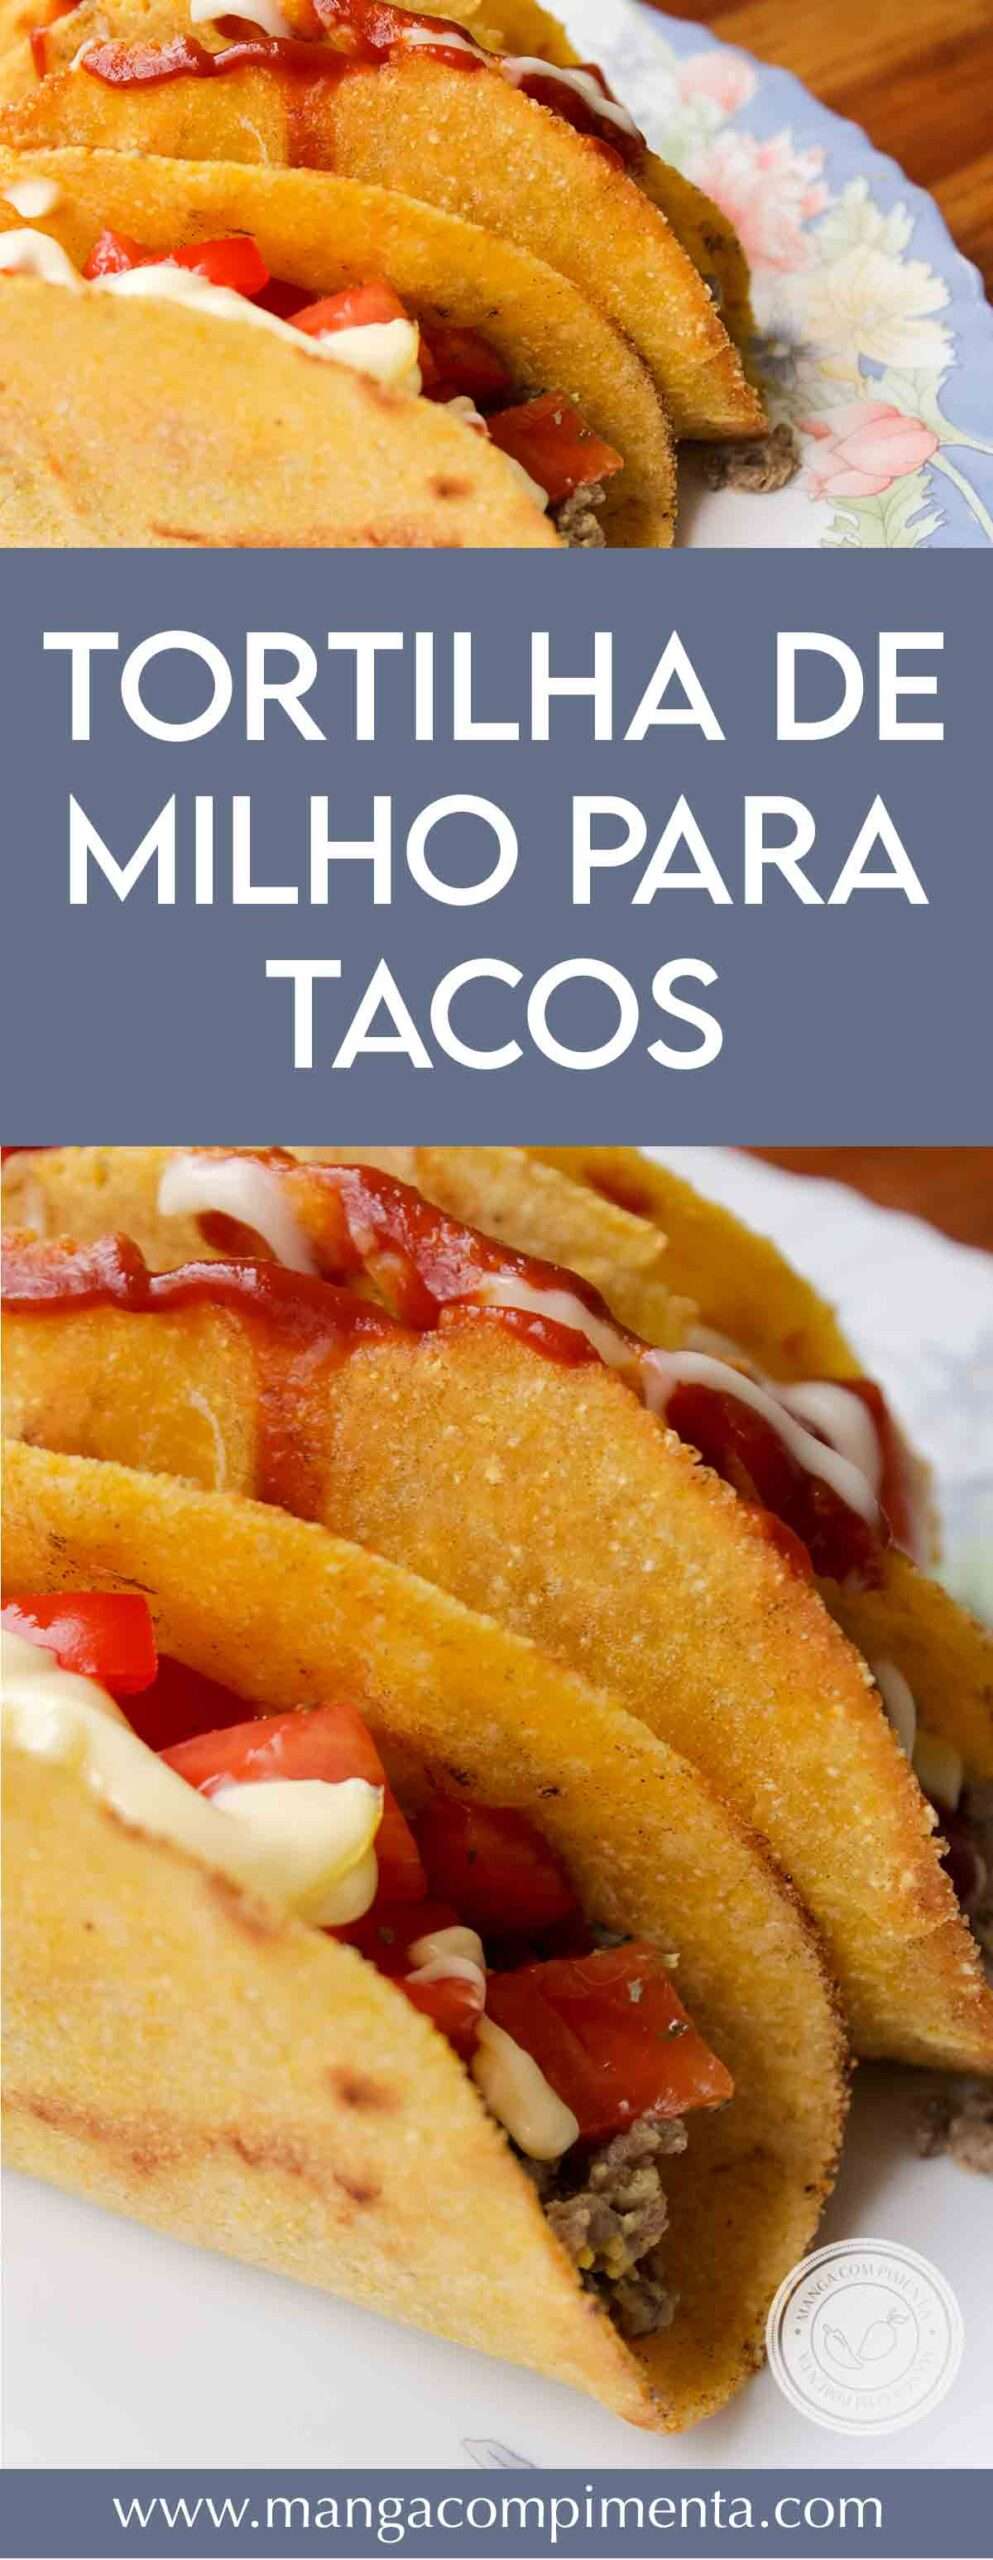 Receita de Tortilha de Milho para Tacos - prepare para as refeições dos dias quentes de verão.